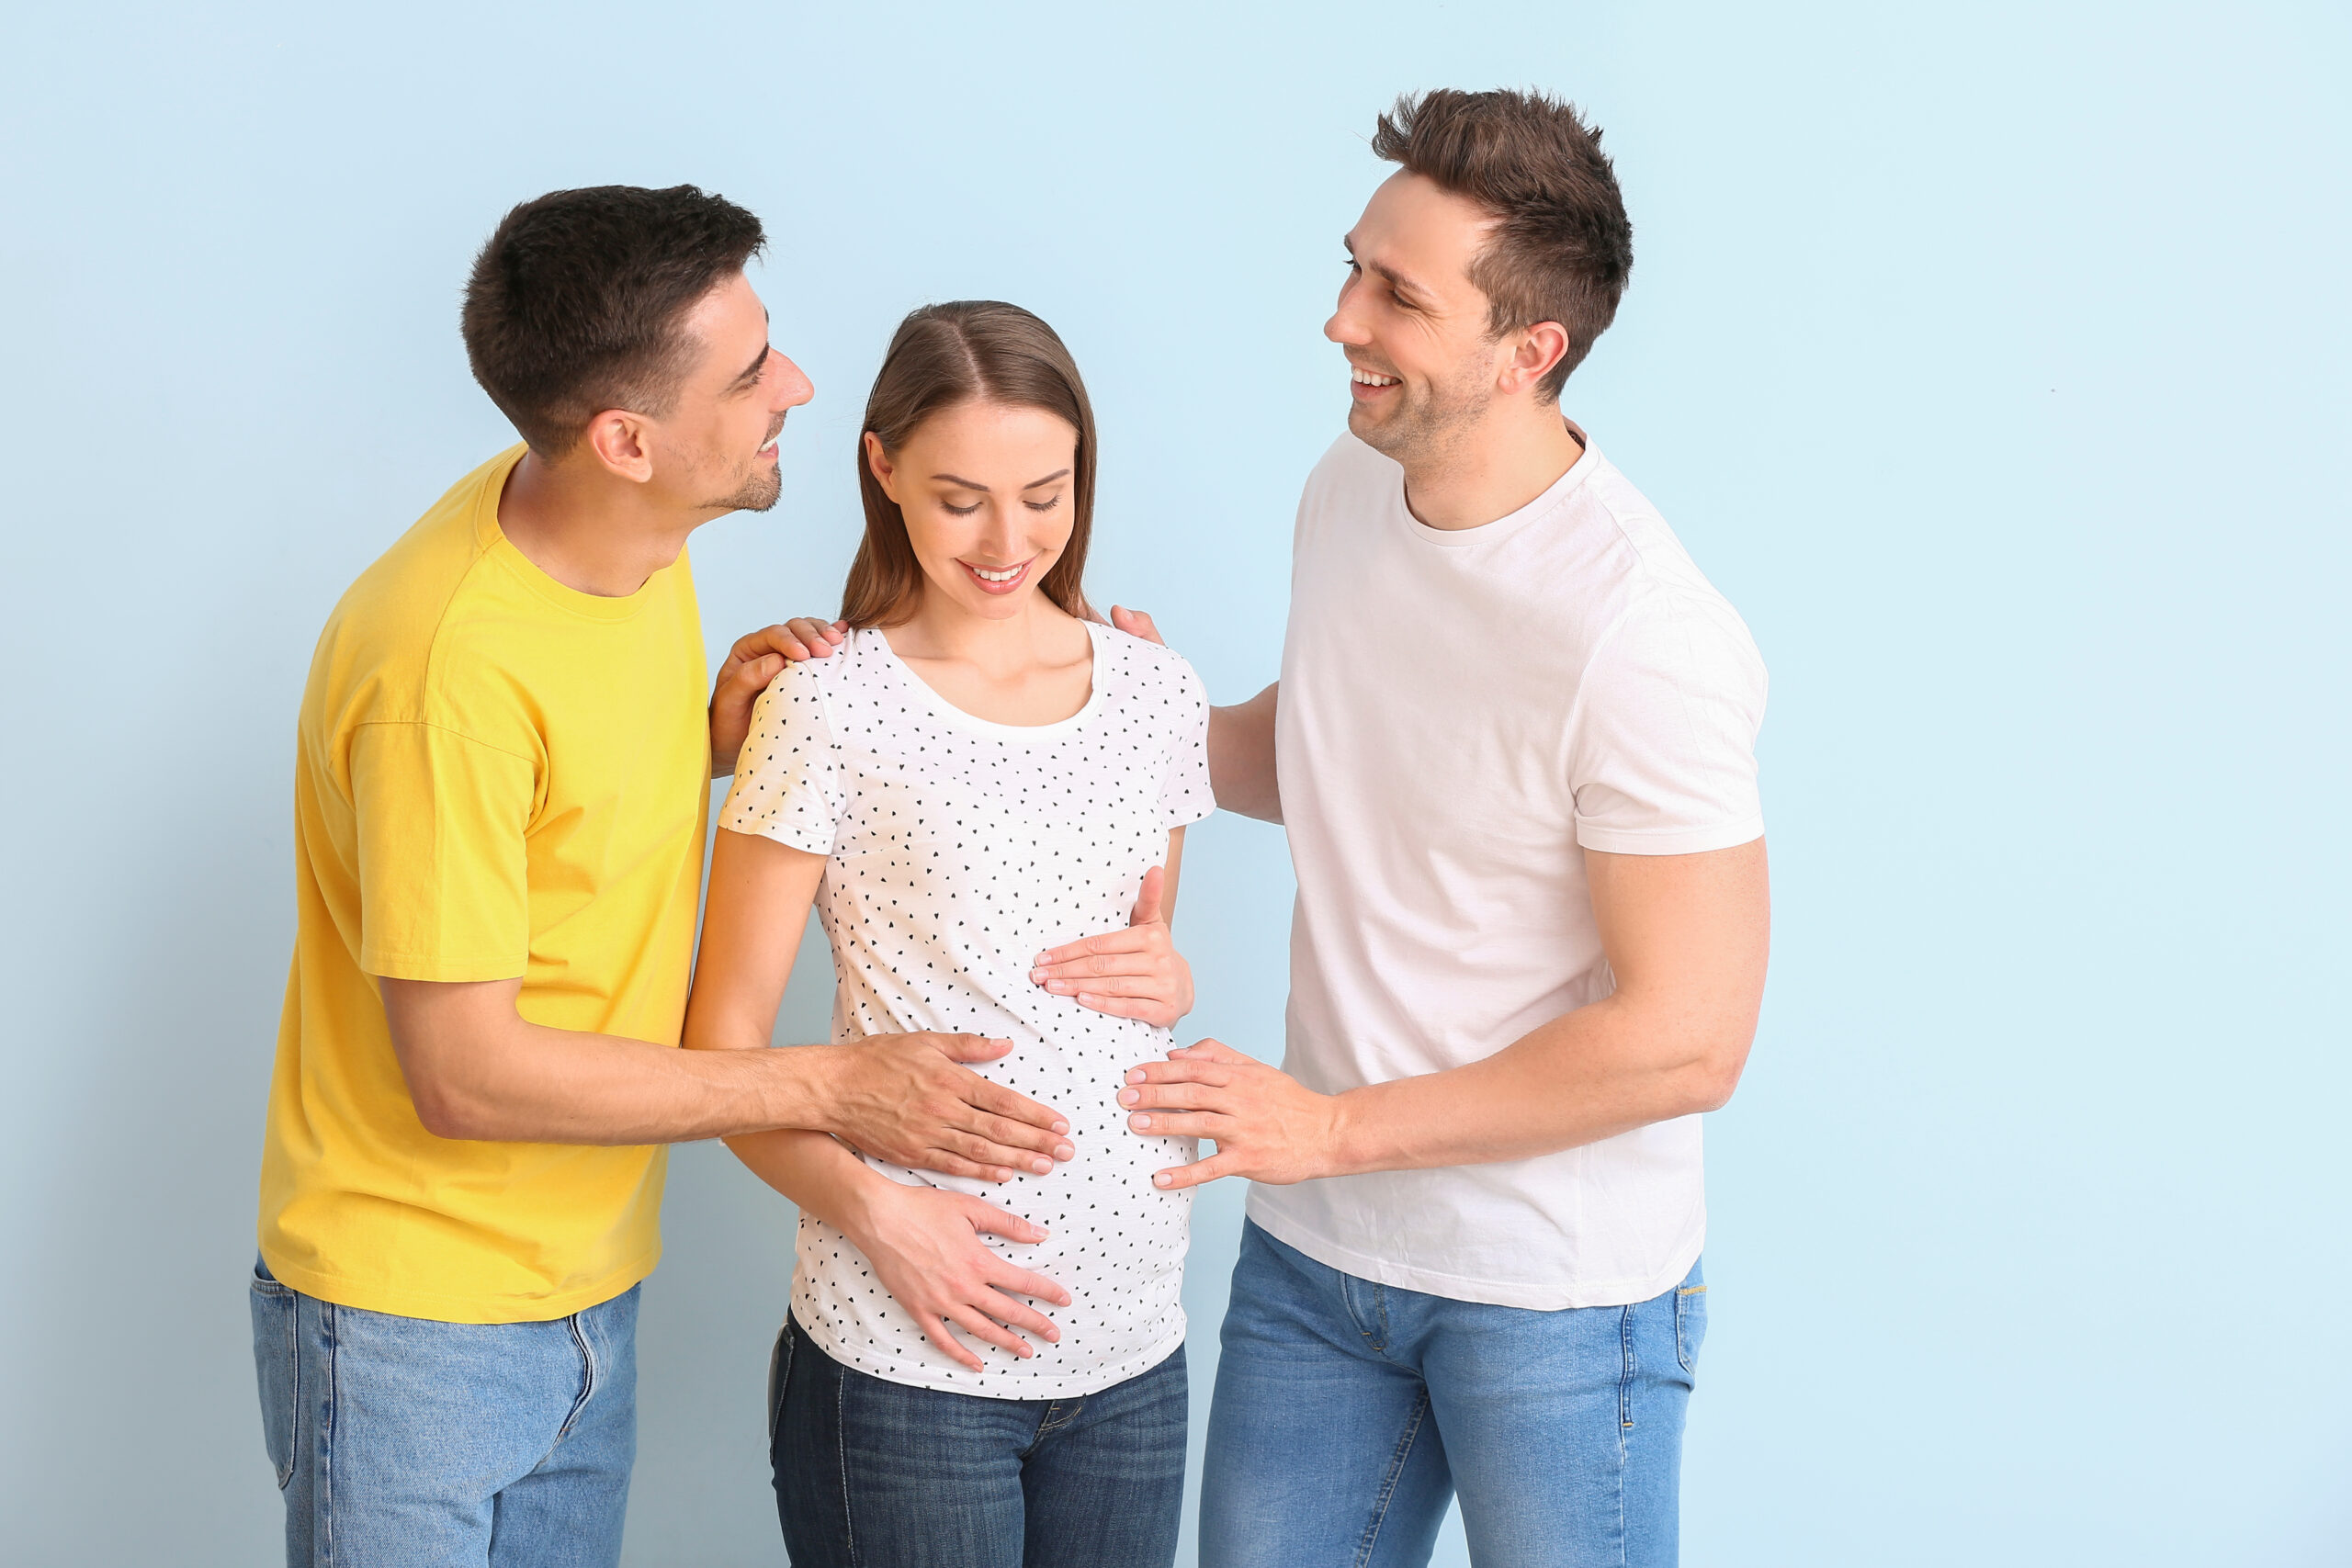 Двое мужчин и беременная женщина вместе улыбаются, положив руки на живот, предлагая родителям ЛГБТ-сообщества заключить соглашение о суррогатном материнстве.